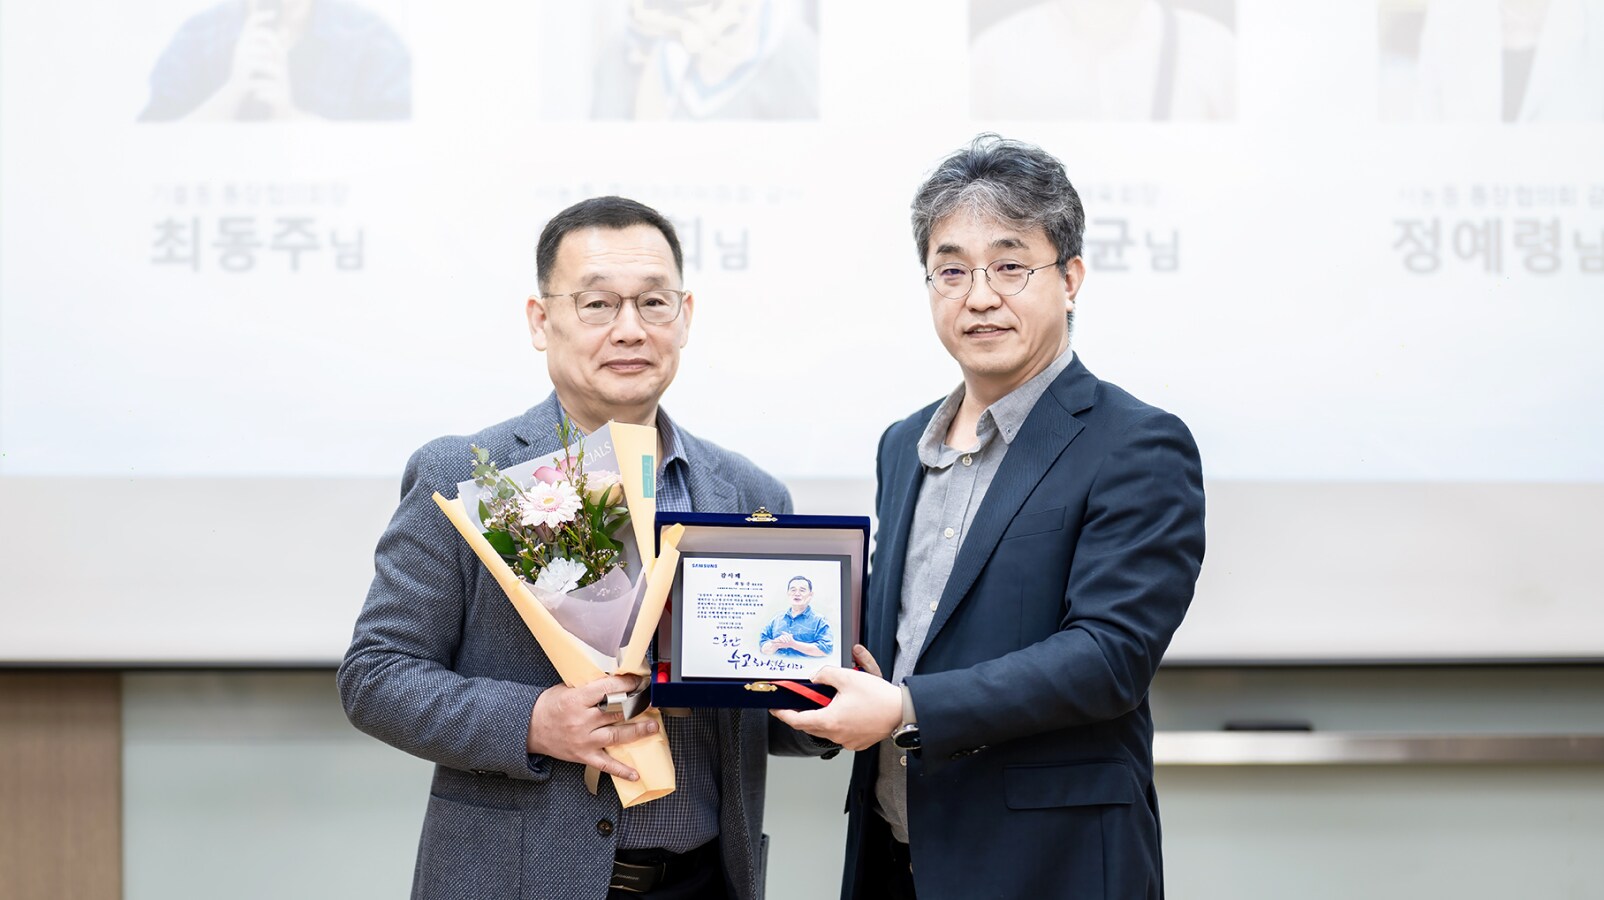 감사패와 꽃다발을 받고 있는 기흥동 前 통장협의회장 최동주 대표위원(왼쪽)